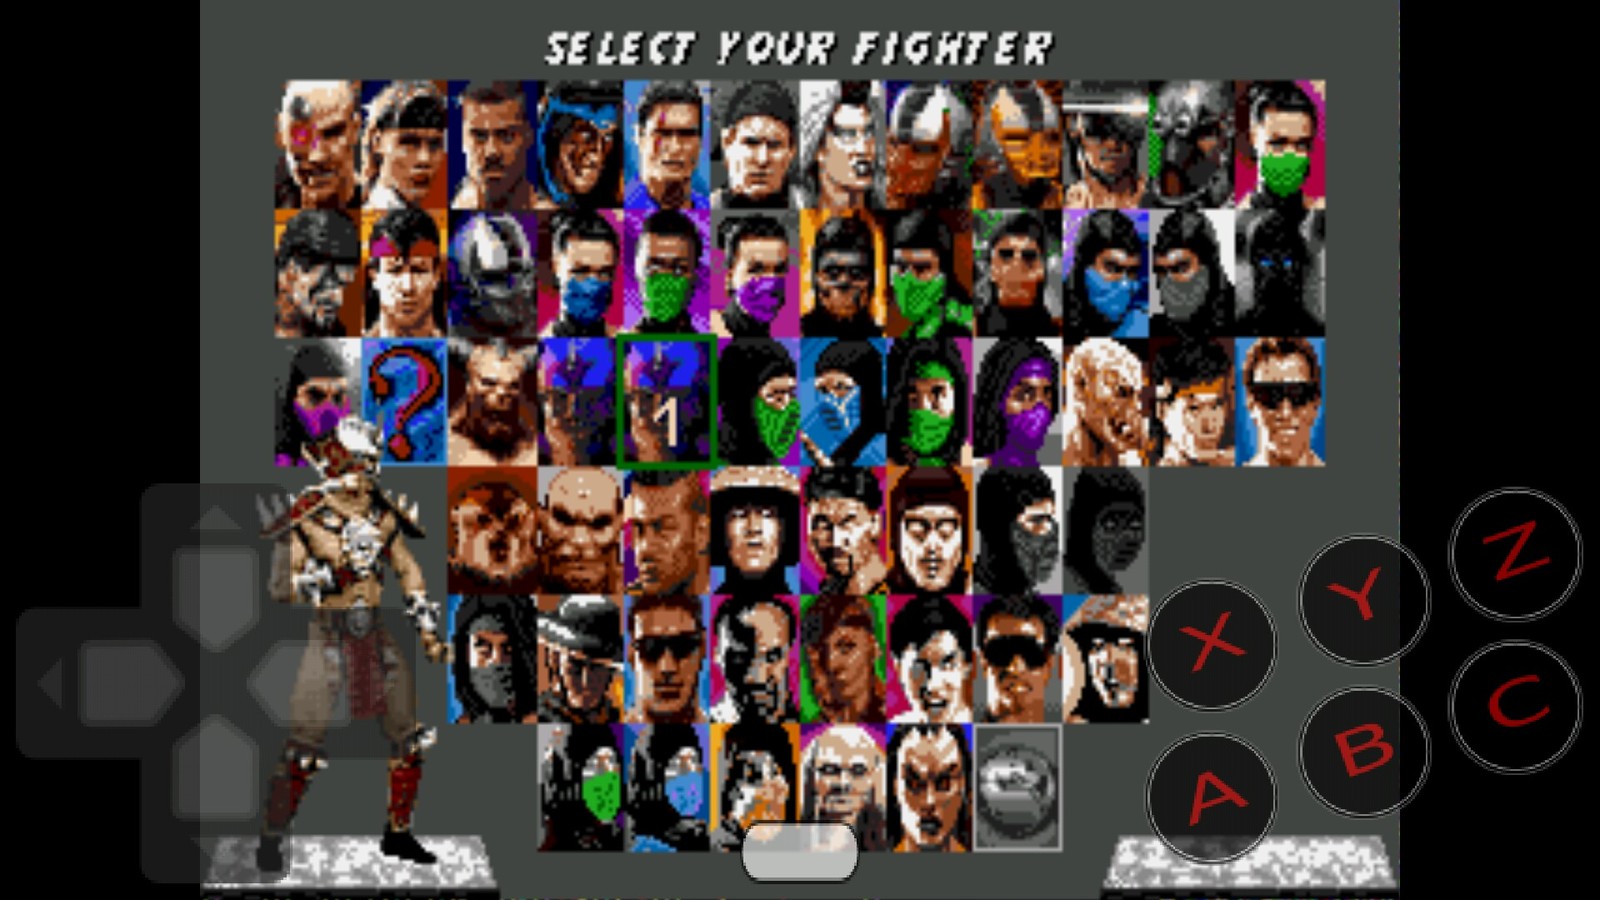 Мортал игры трилогия. Mortal Kombat Trilogy Sega персонажи. Ultimate Mortal Kombat 3. Mortal Kombat Trilogy бойцы. Мортал комбат 3 ультиматум сега.